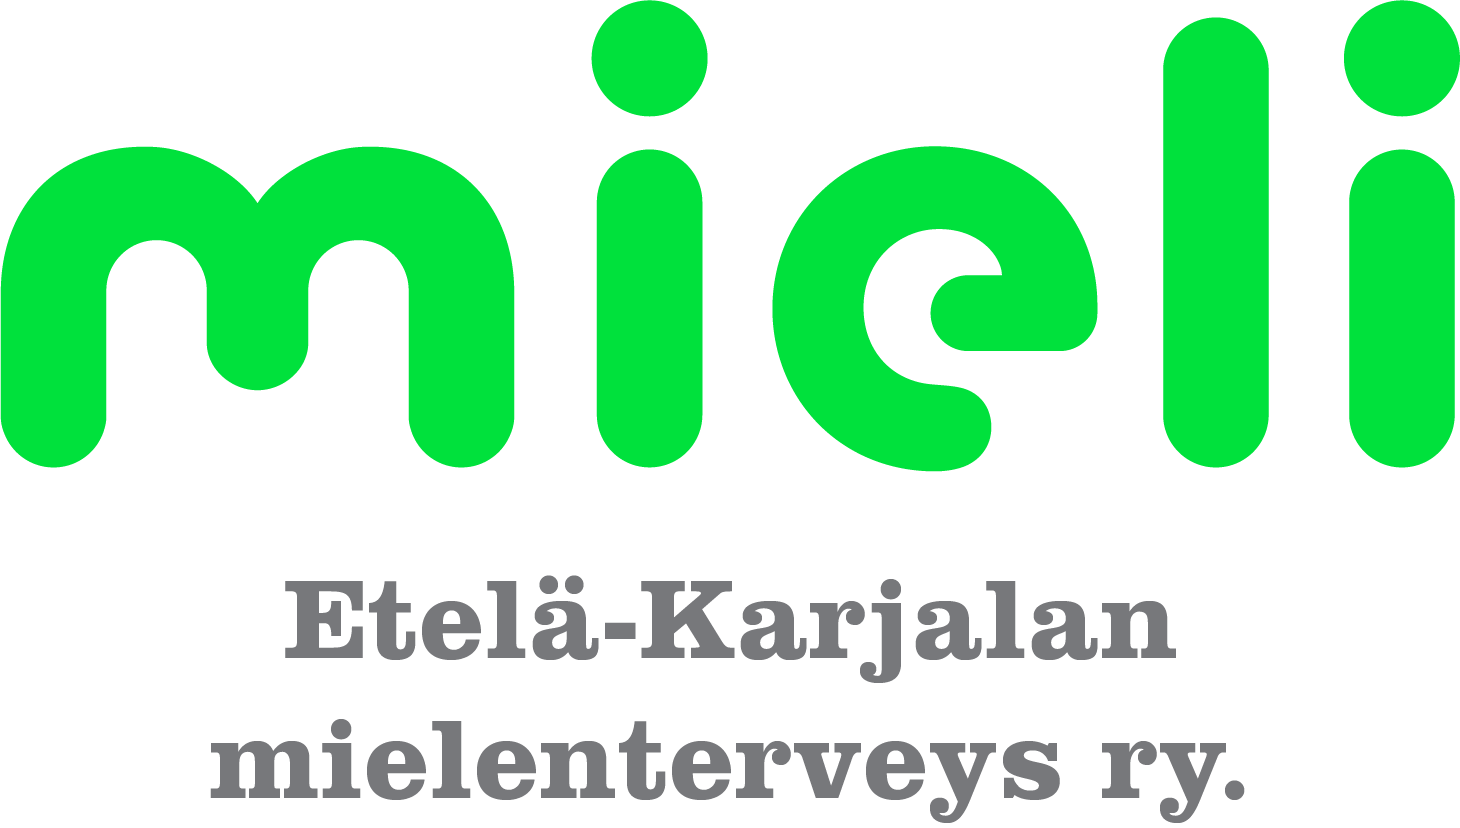 MIELI Etelä-Karjalan mielenterveys ry-logo